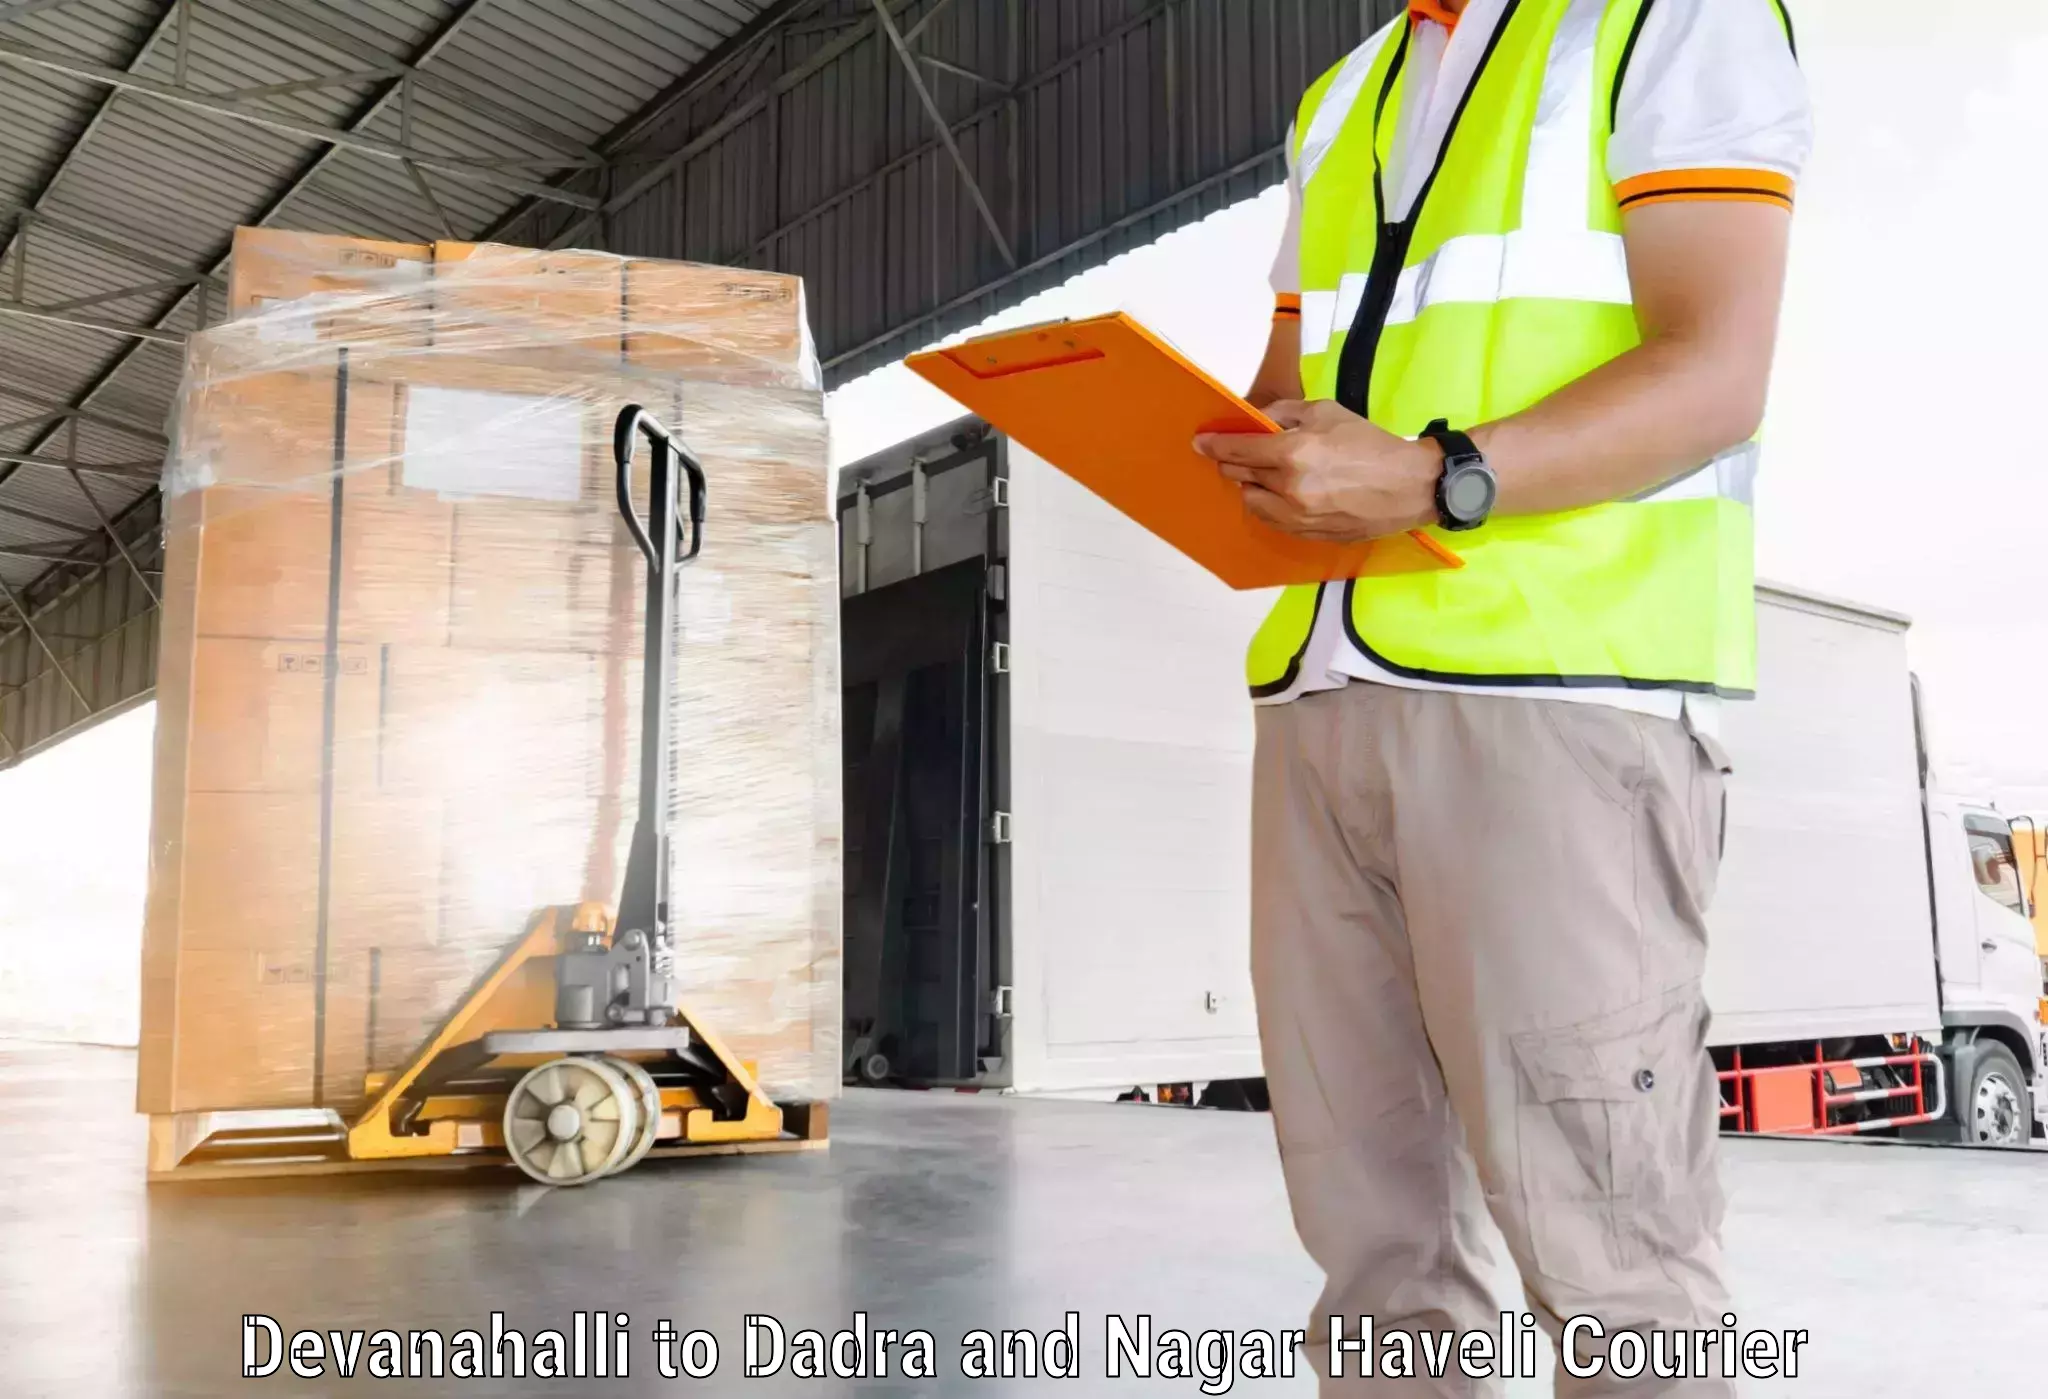 Logistics service provider Devanahalli to Dadra and Nagar Haveli